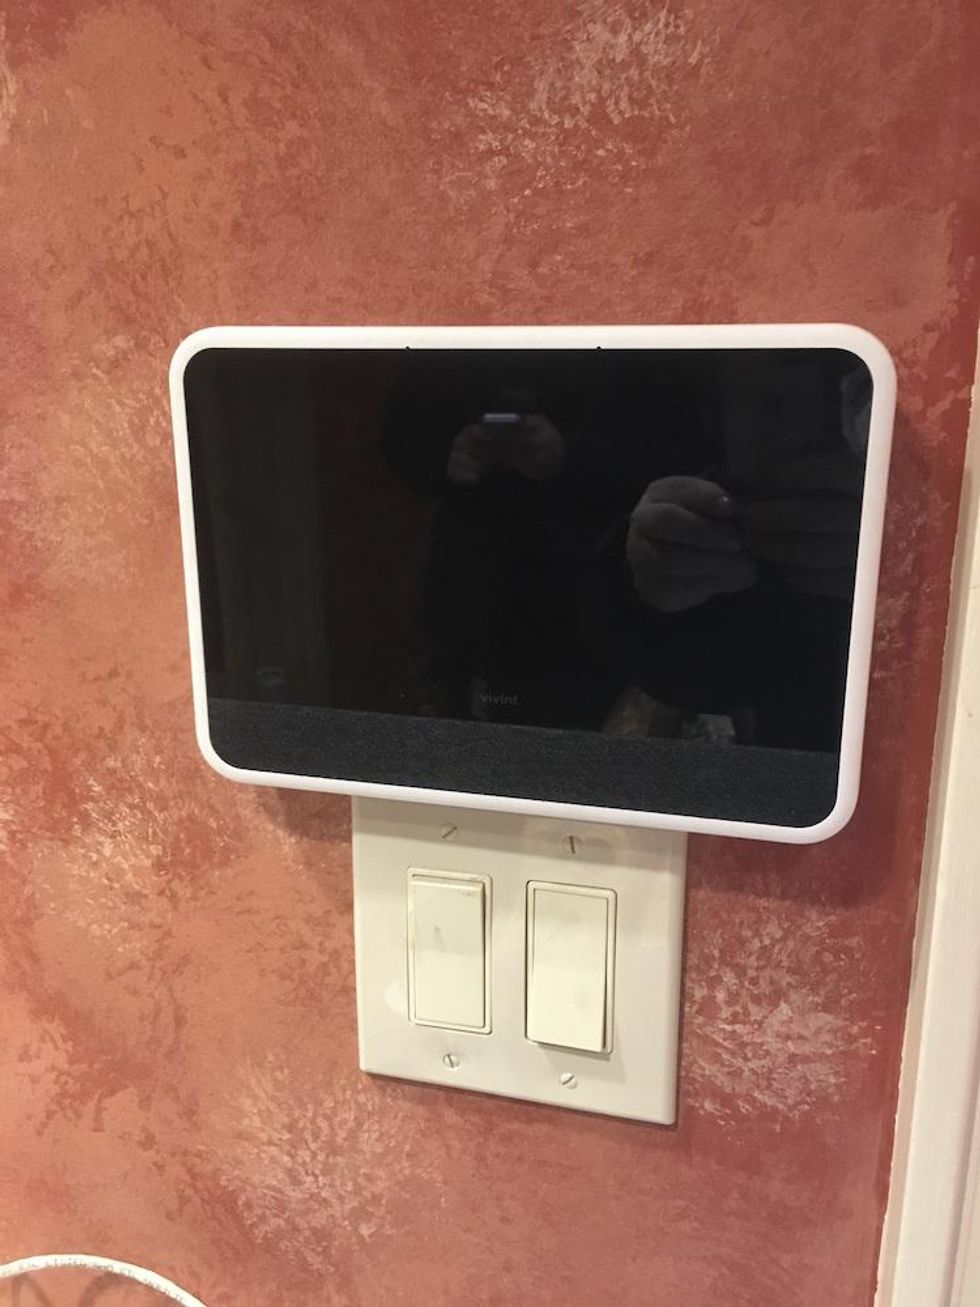 A photo of Vivint Smart Hub on a wall inside a home.